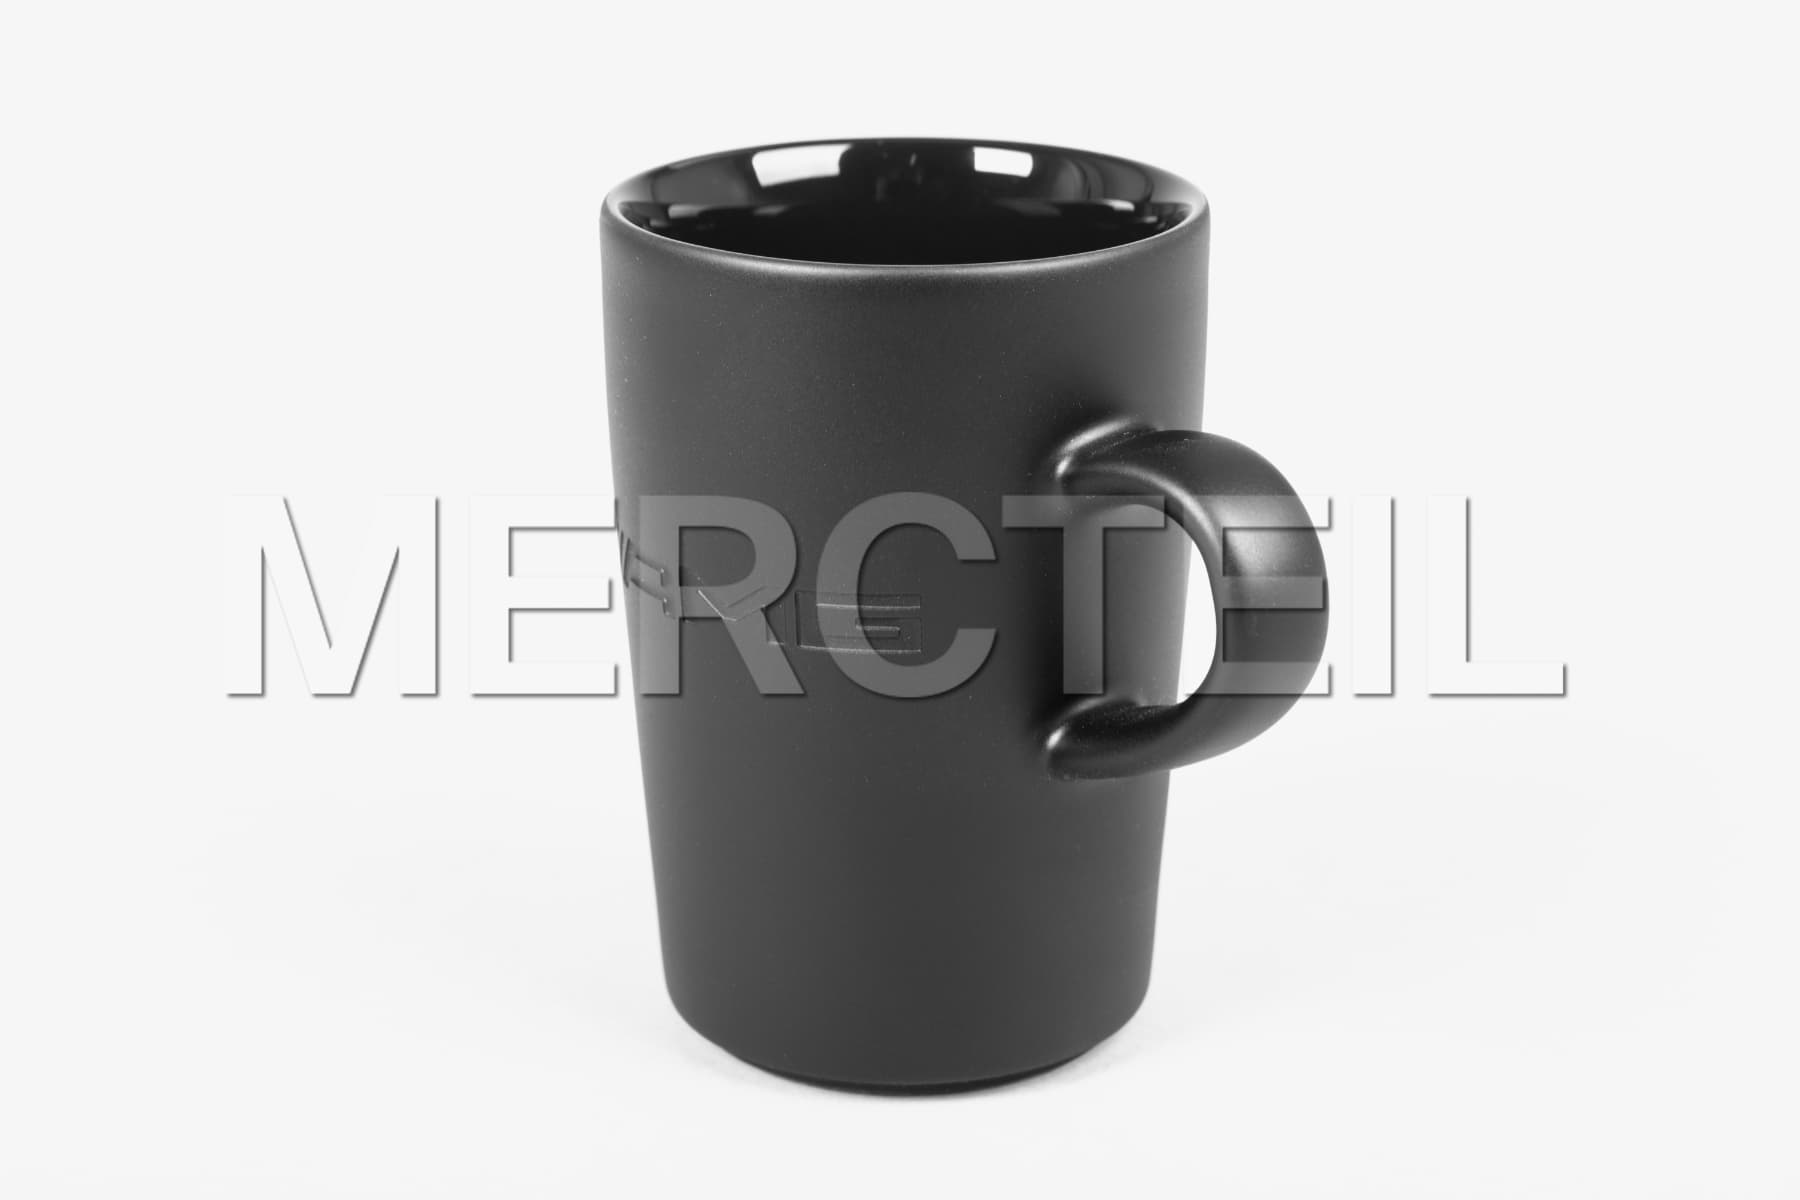 AMG Kaffeebecher Porzellan Tasse Schwarz Matt Original Mercedes